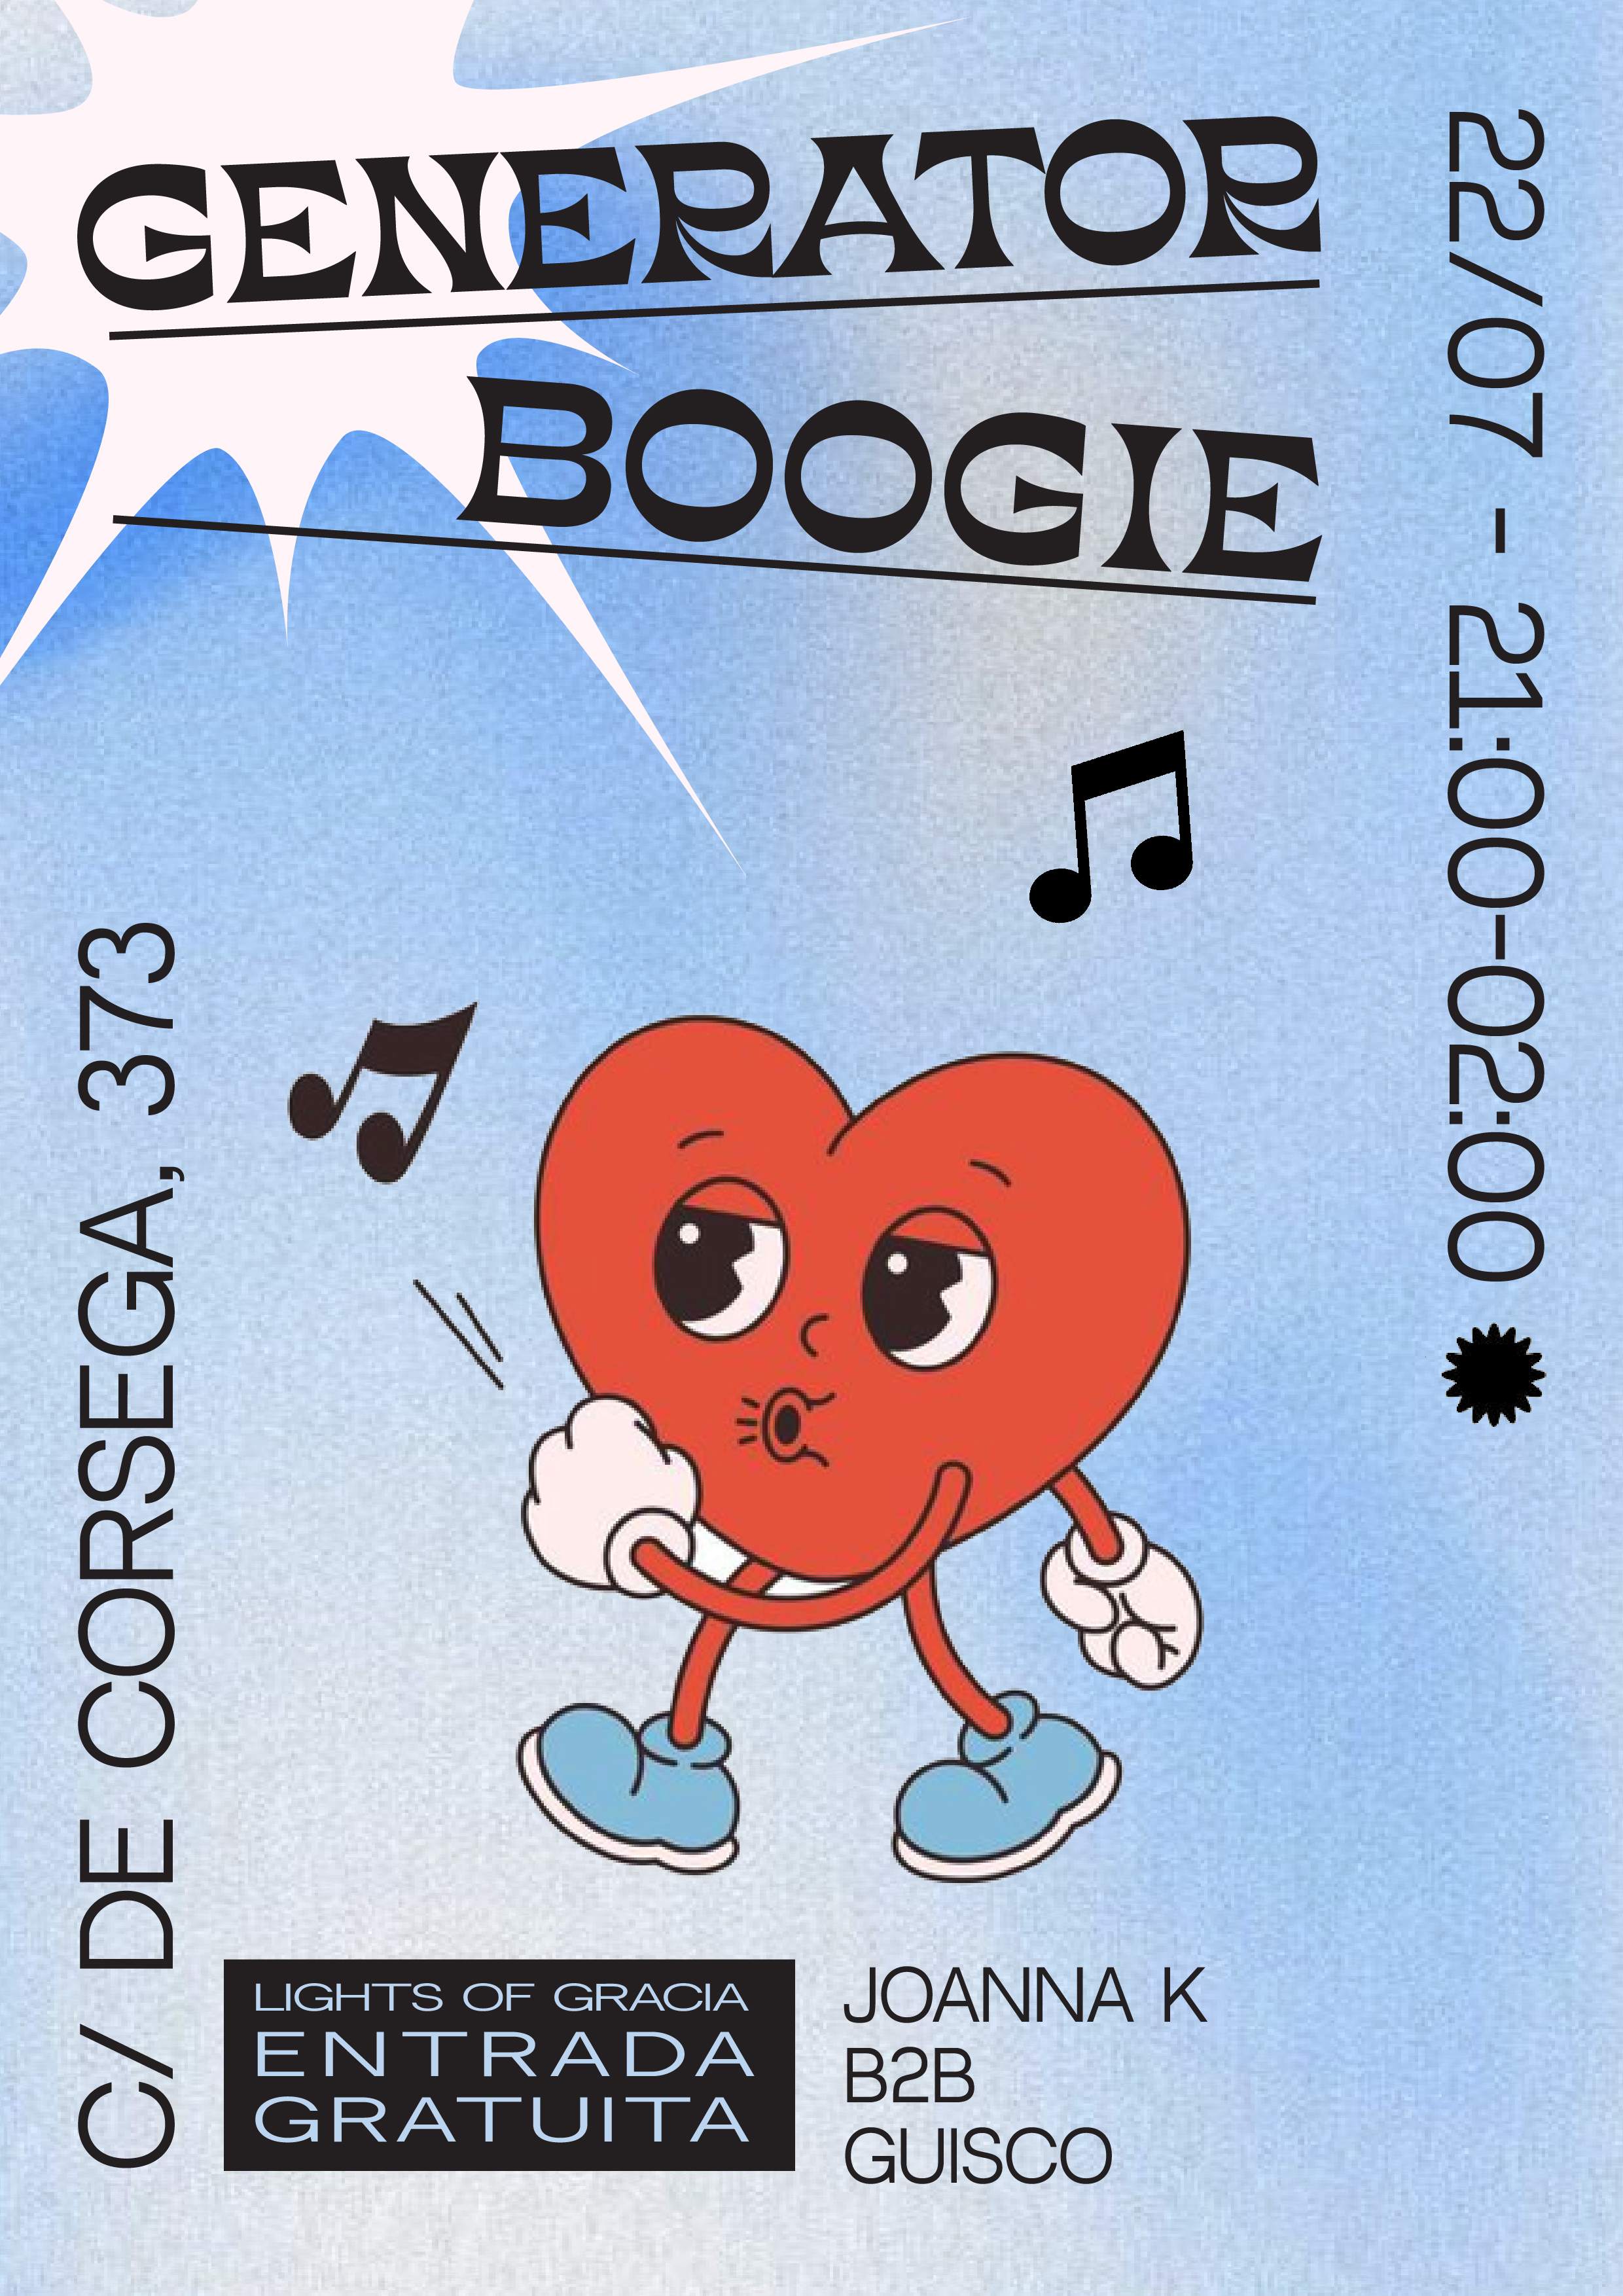 Generator Boogie - Página frontal